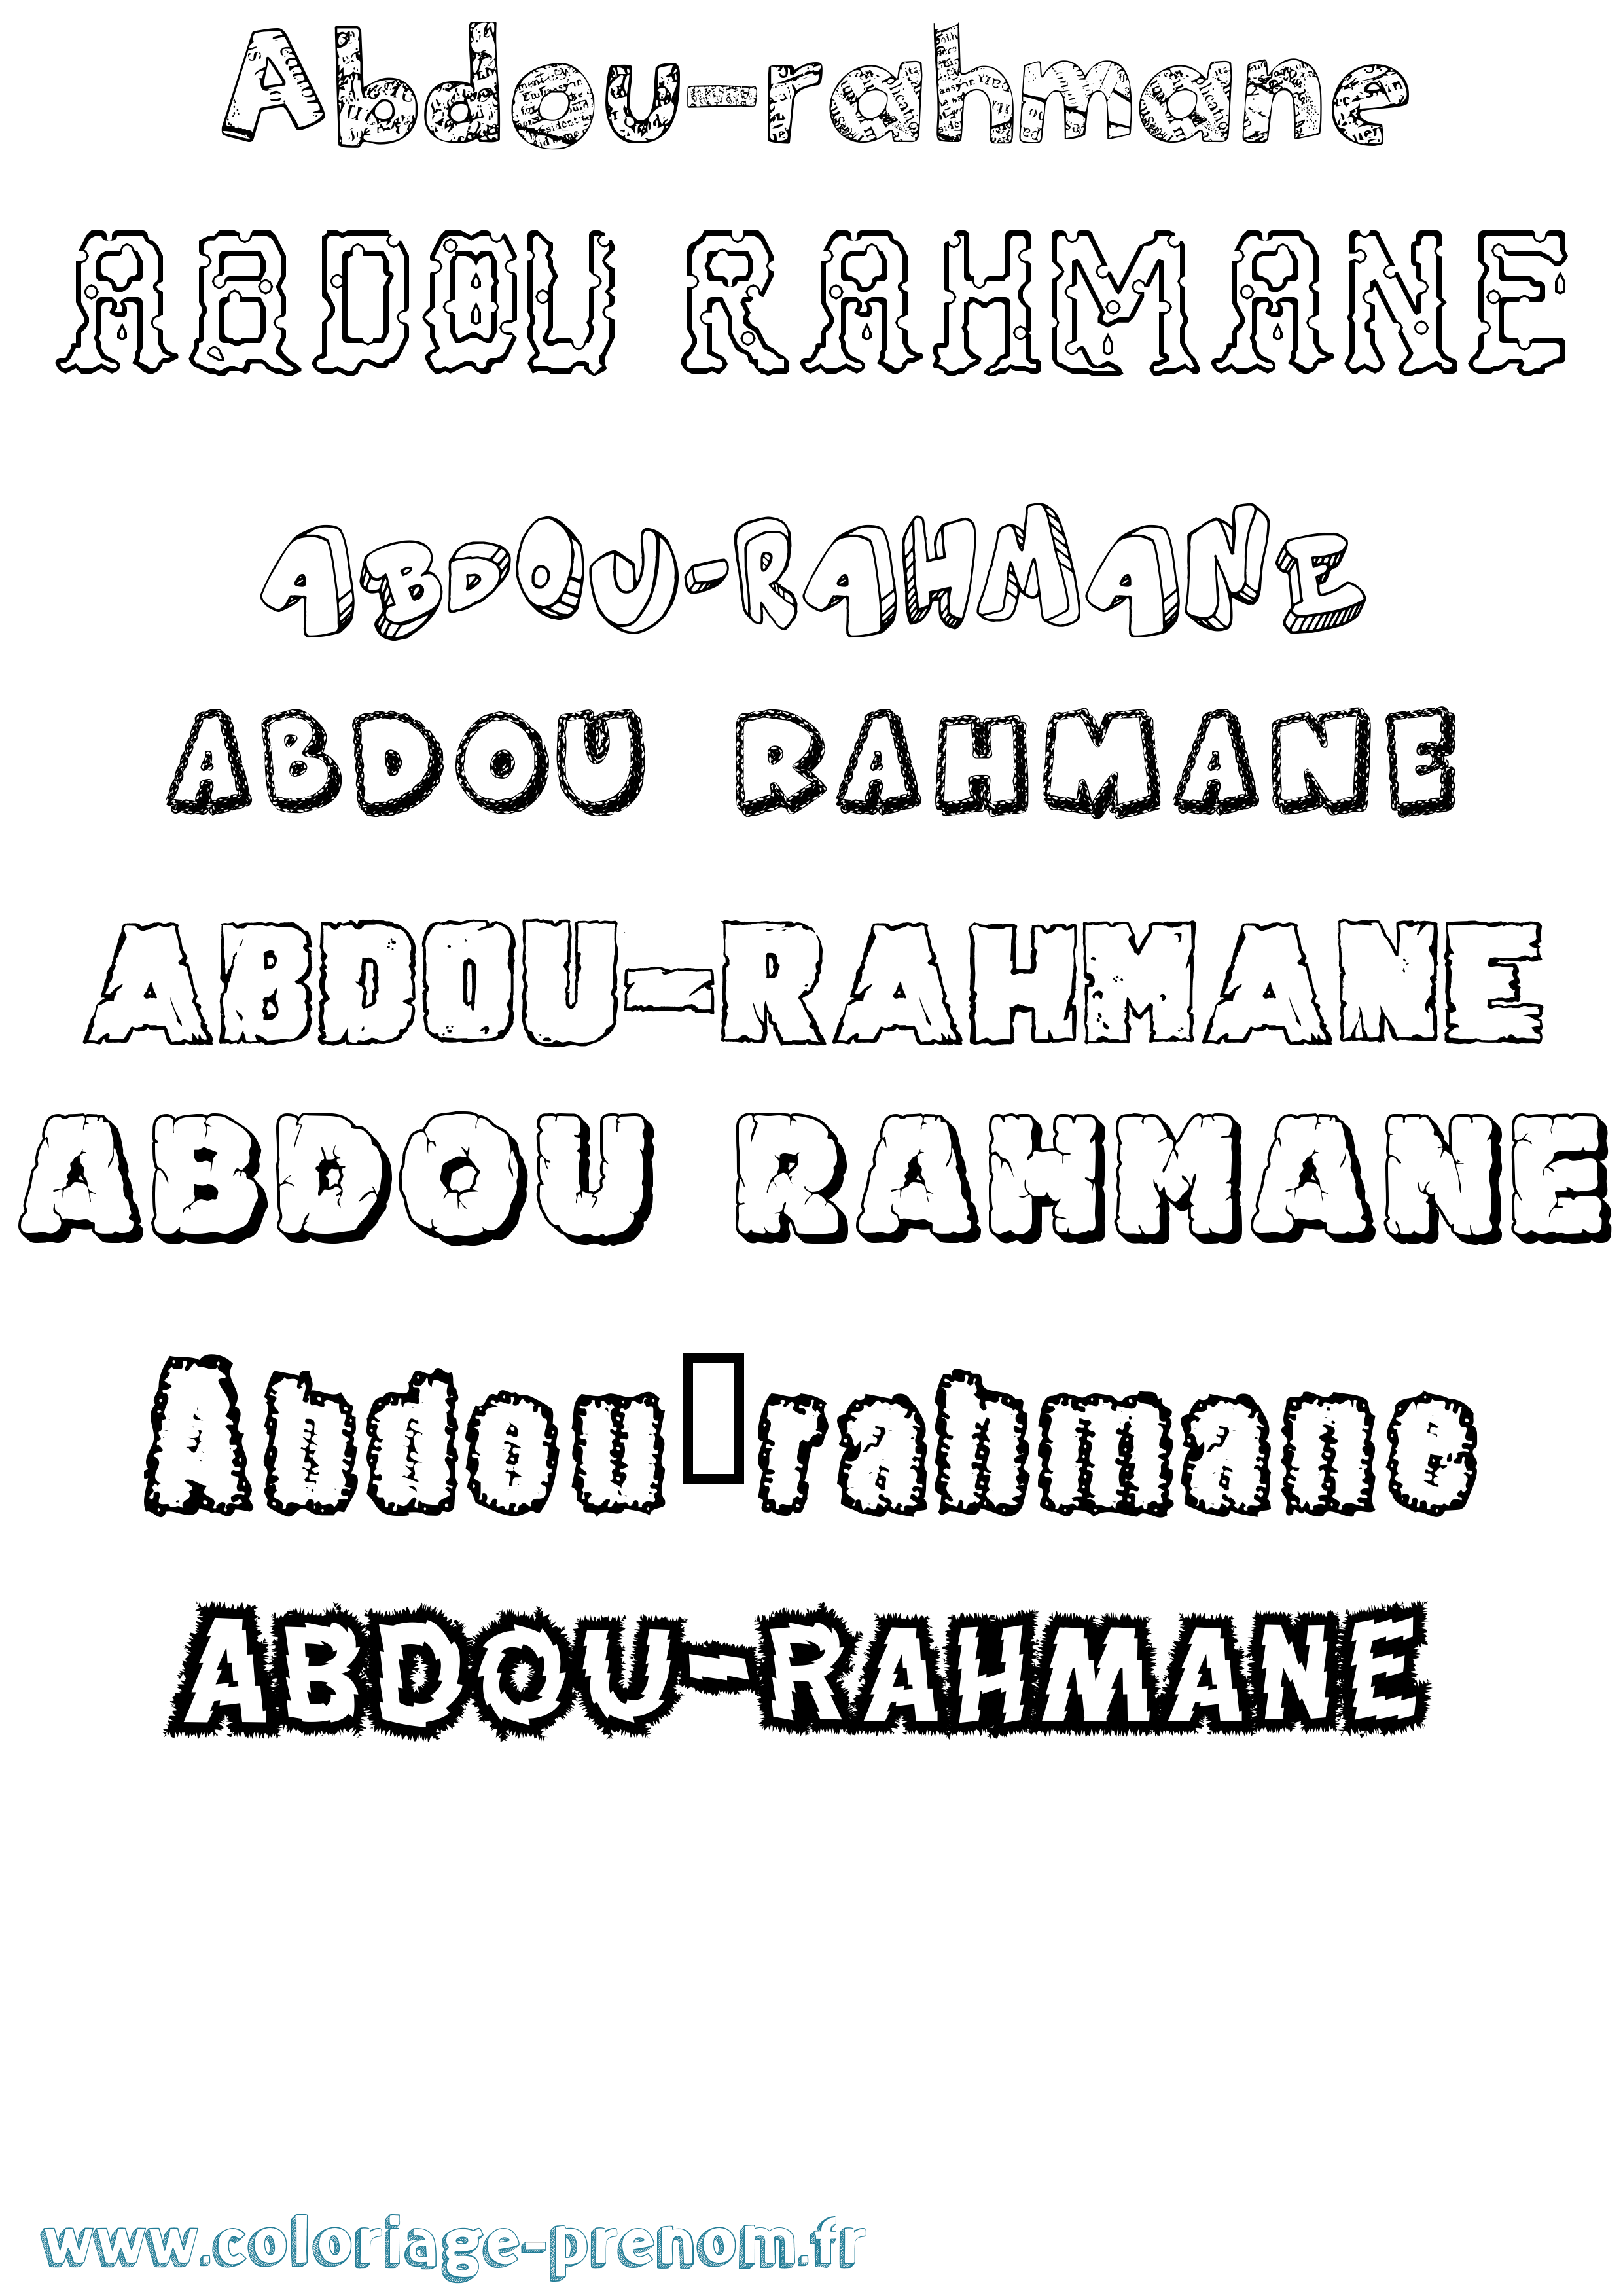 Coloriage prénom Abdou-Rahmane Destructuré